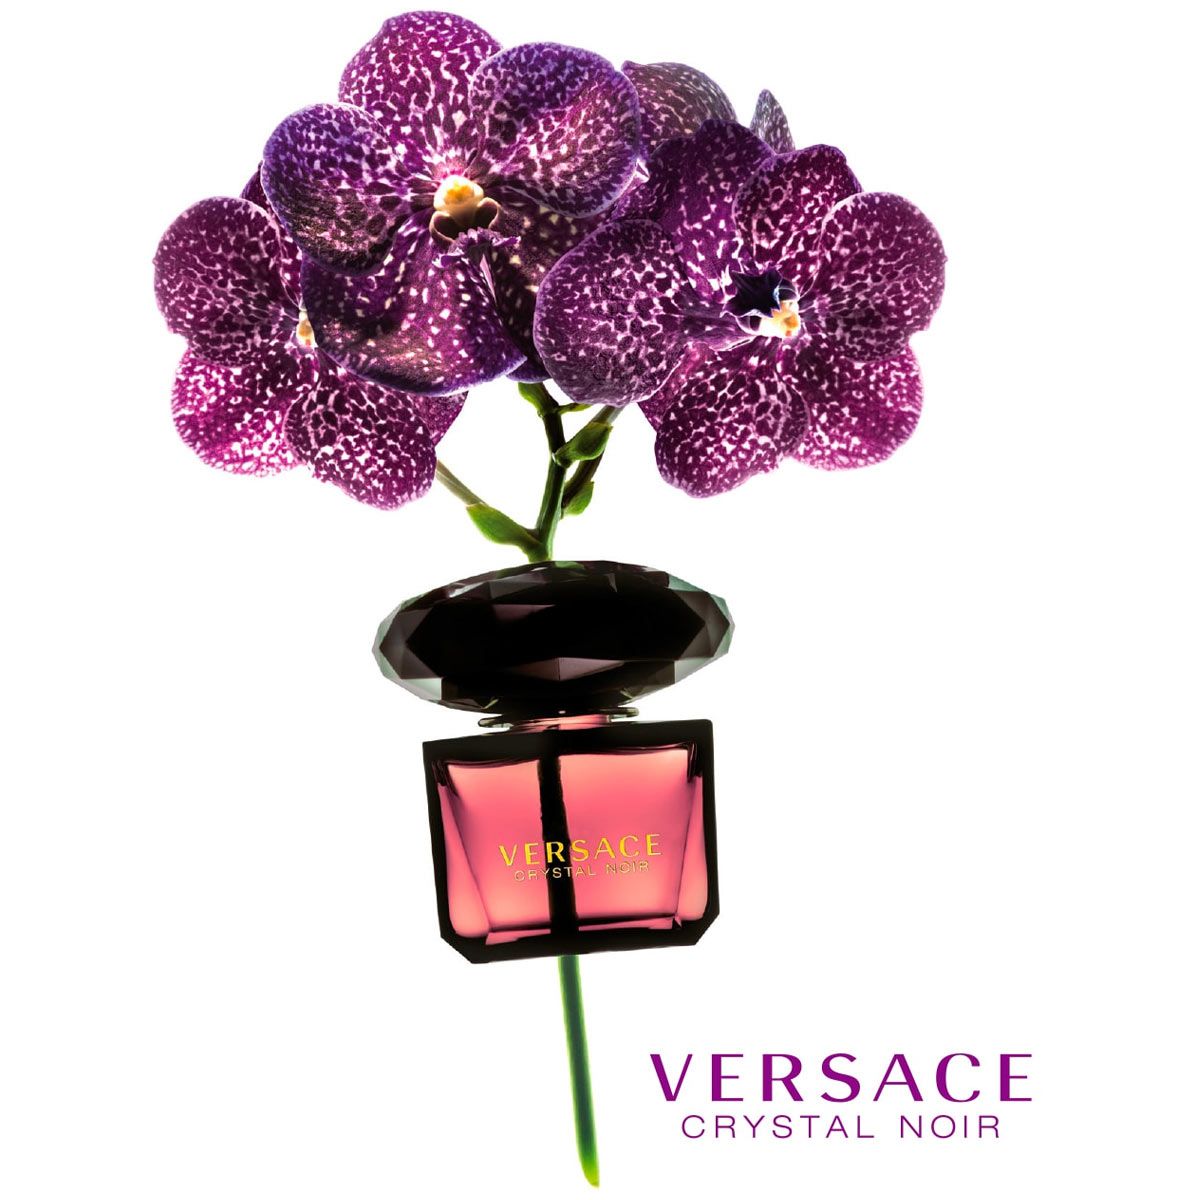  Versace Crystal Noir 